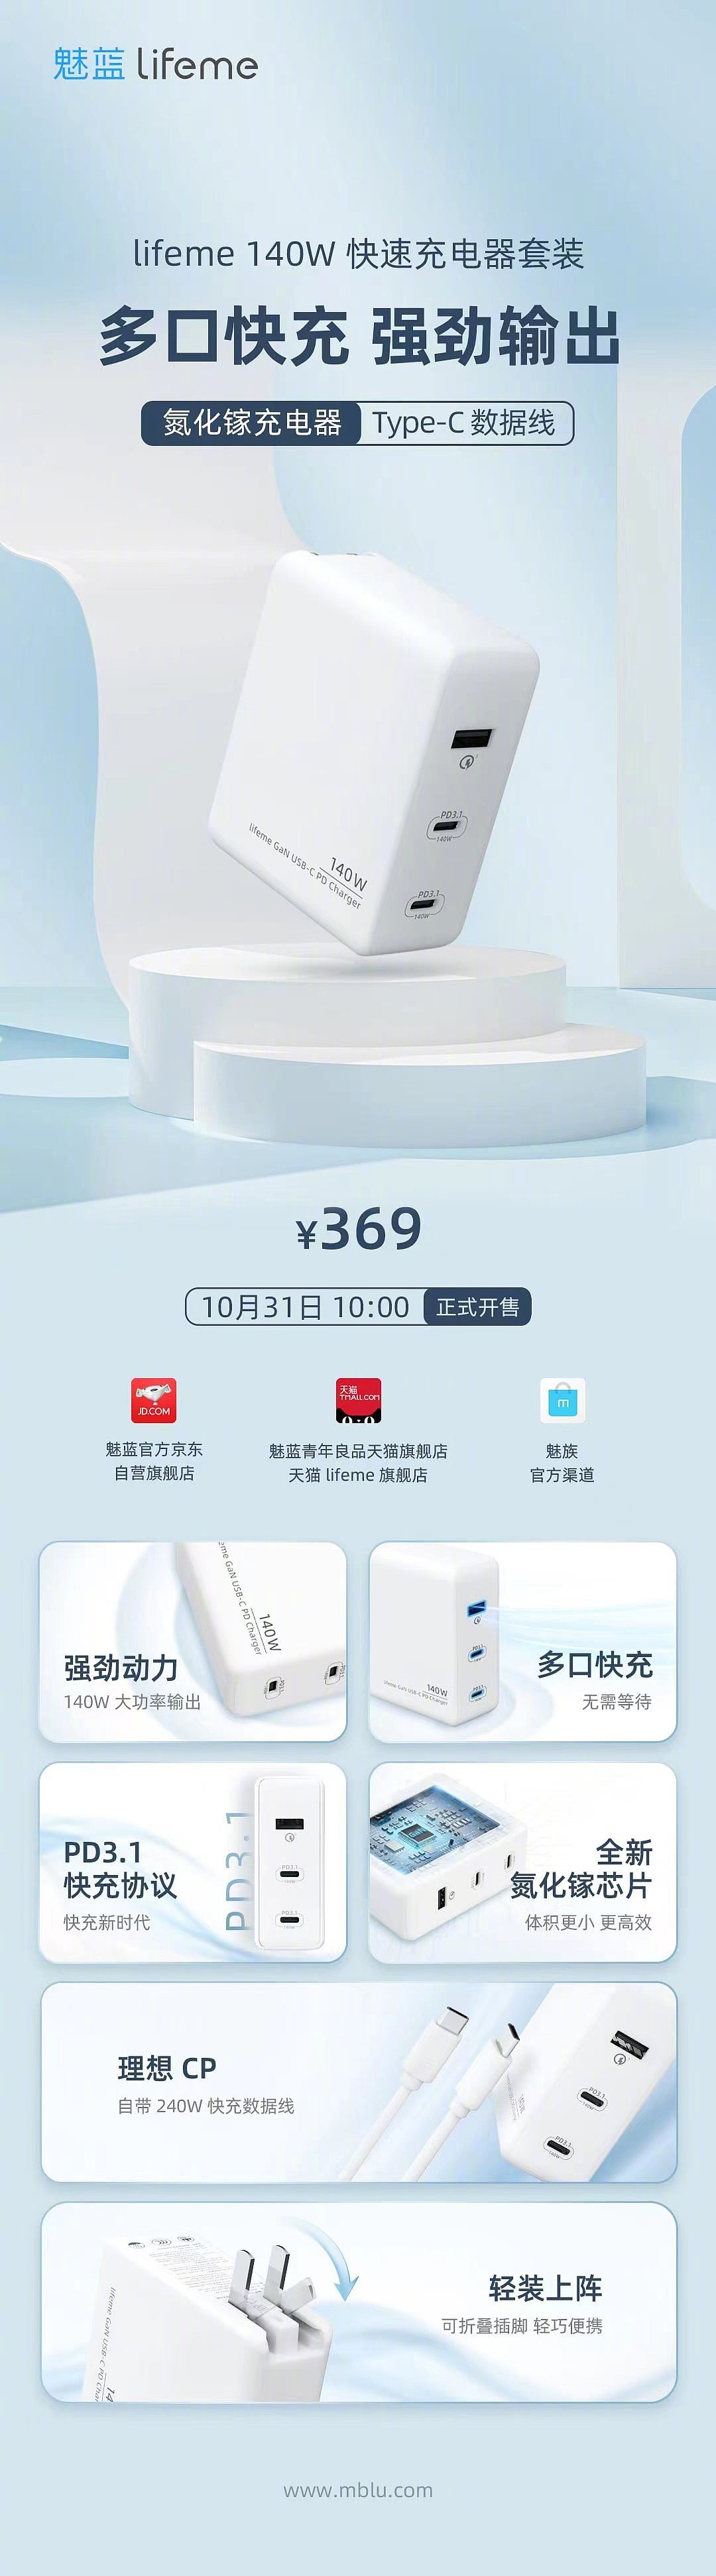 魅蓝 lifeme 140W 氮化镓双 USB-C 口 PD 3.1 充电器今日首销，售价 369 元 - 1